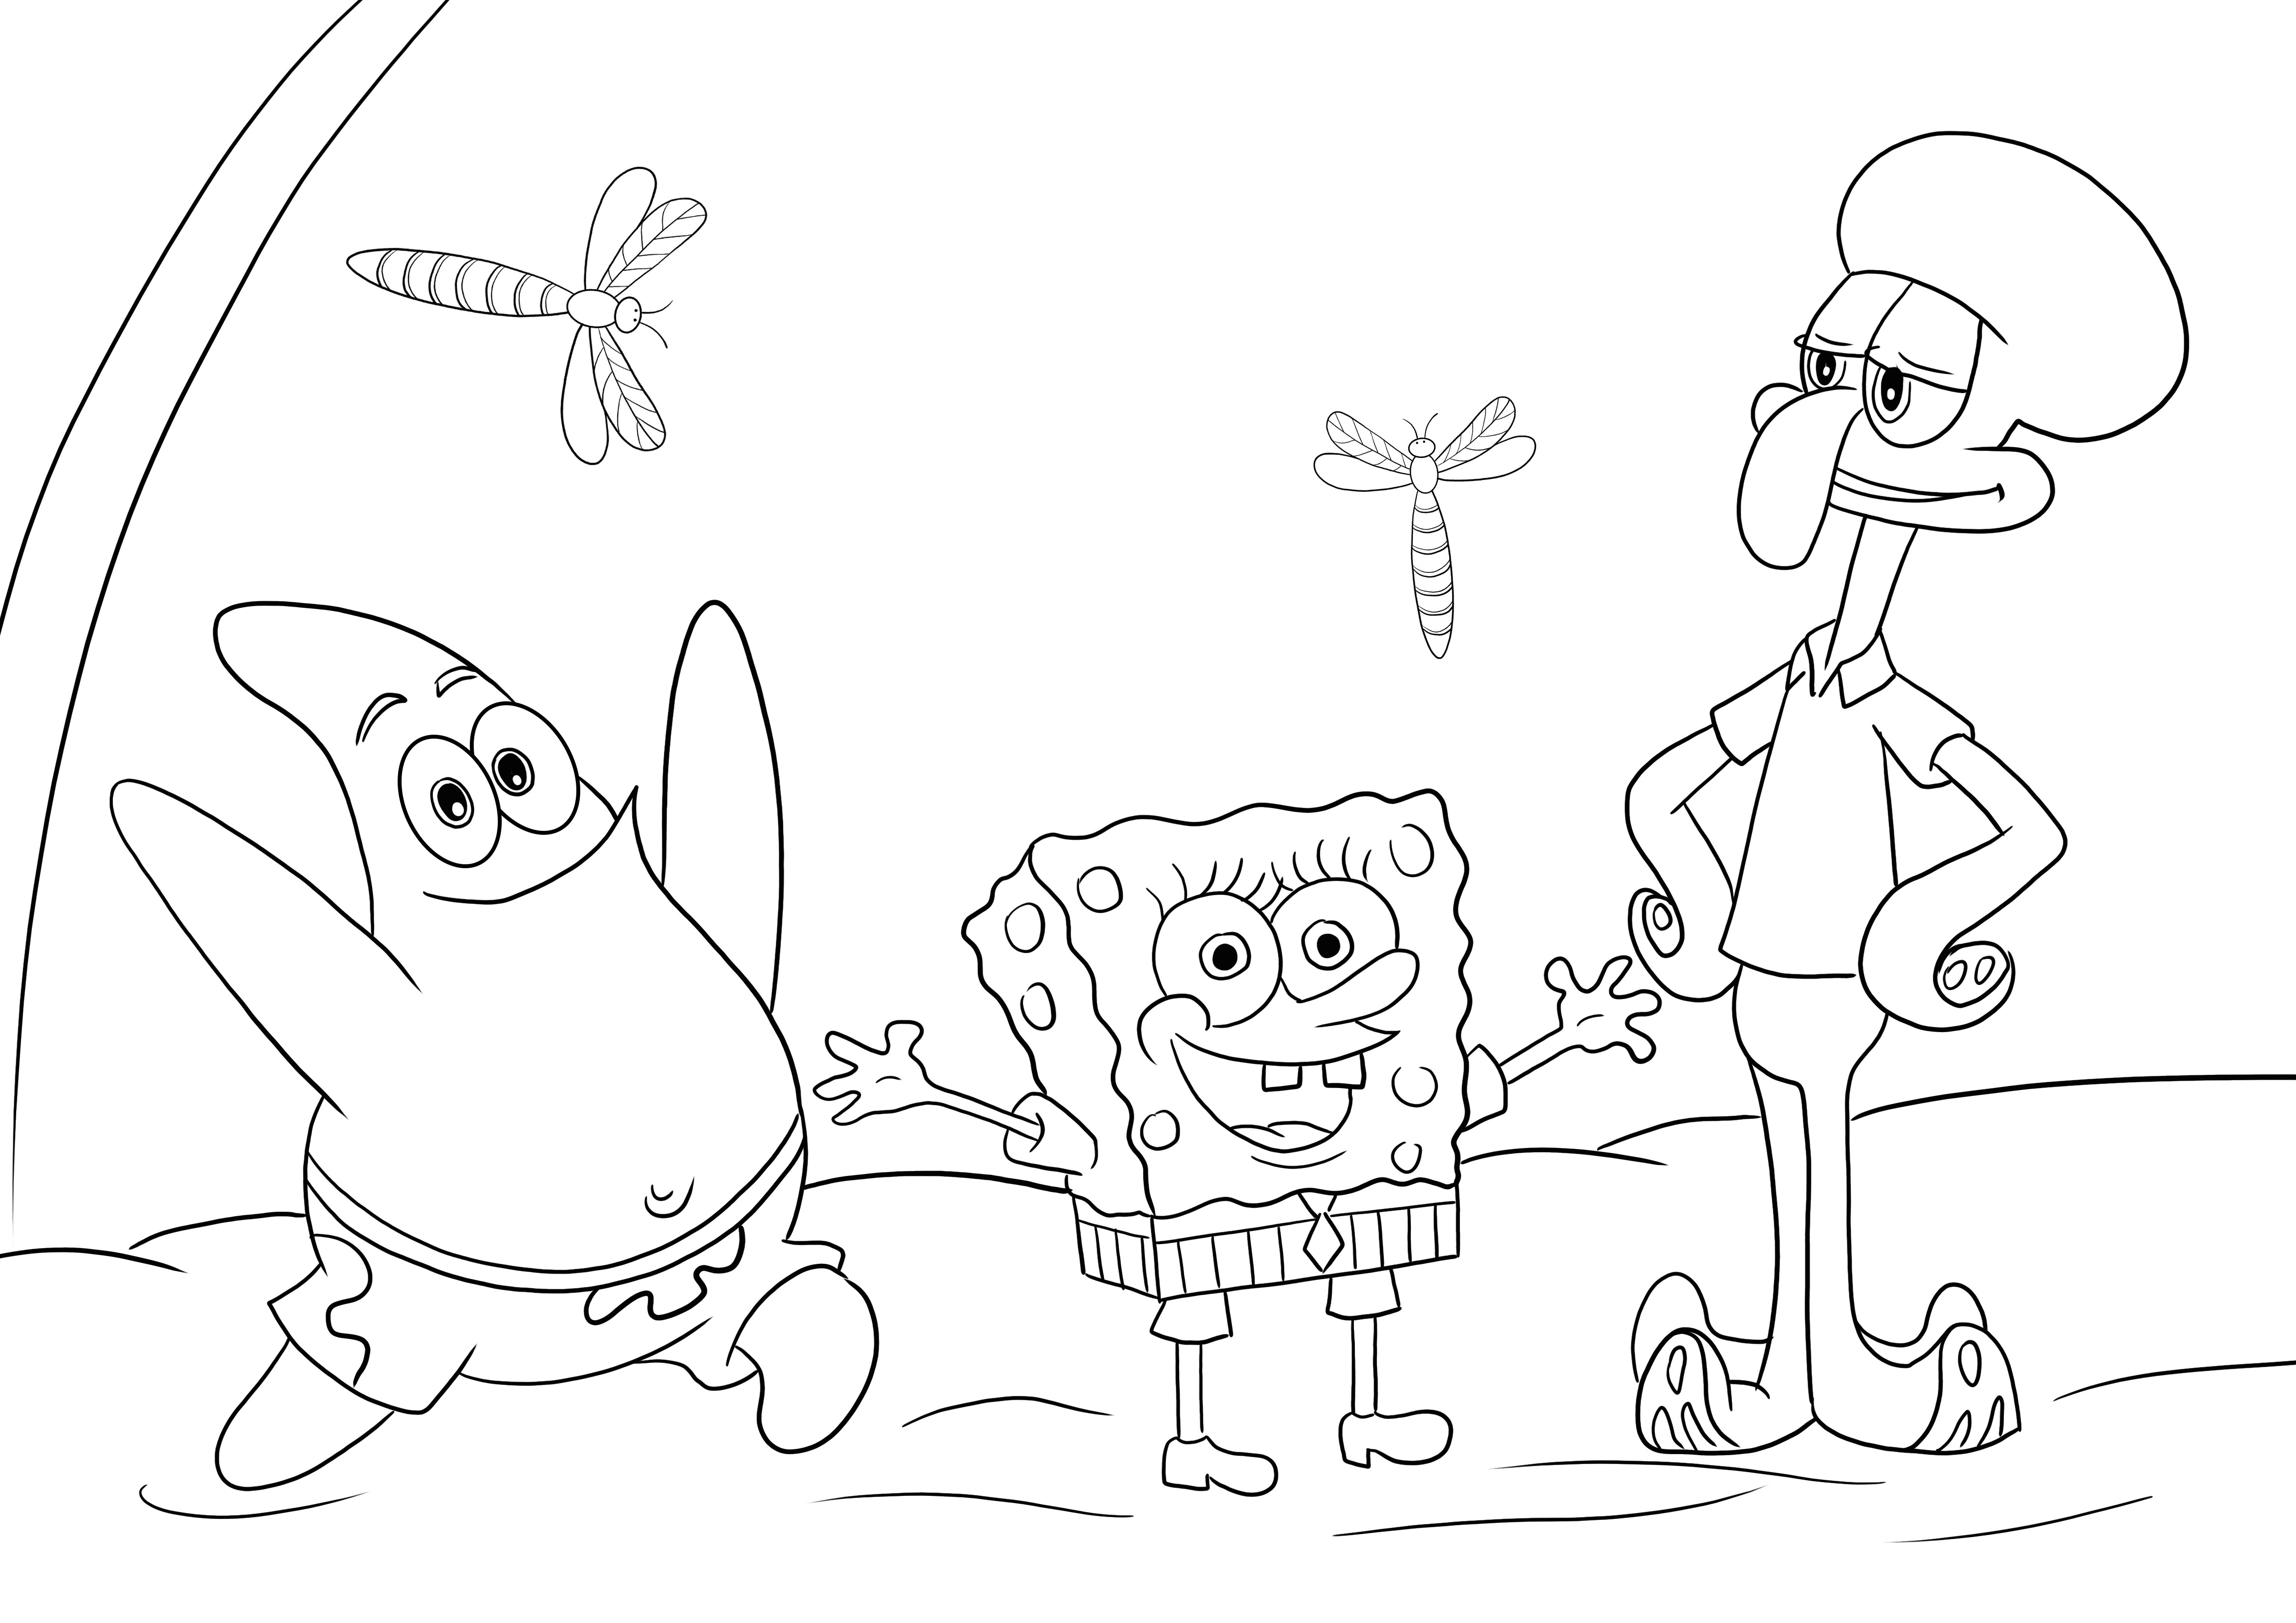 Sponge Bob-Patrick Star-Squidward para colorir e imprimir imagem grátis